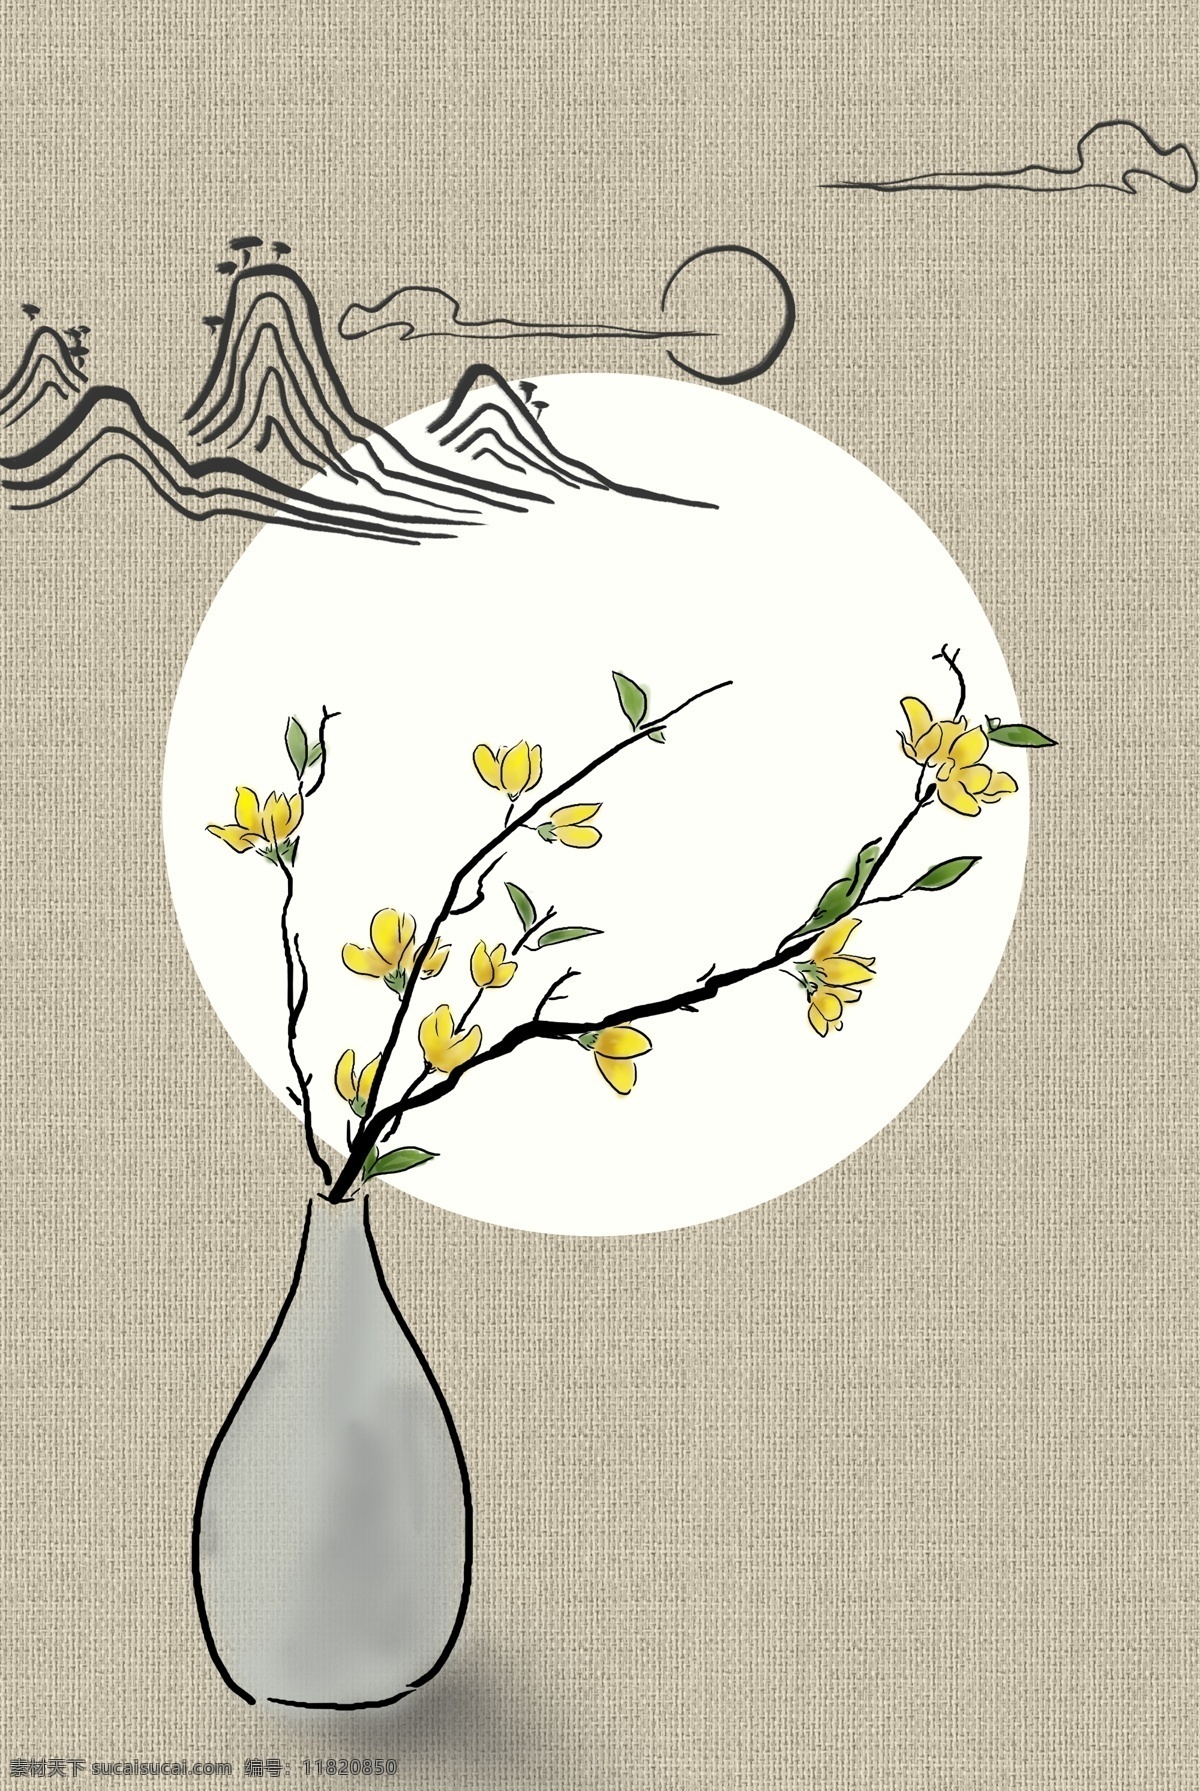 古典 花朵 远山 线条 工笔画 背景 花卉 海报背景模板 传统海报 古风 中式海报背景 中国风 复古